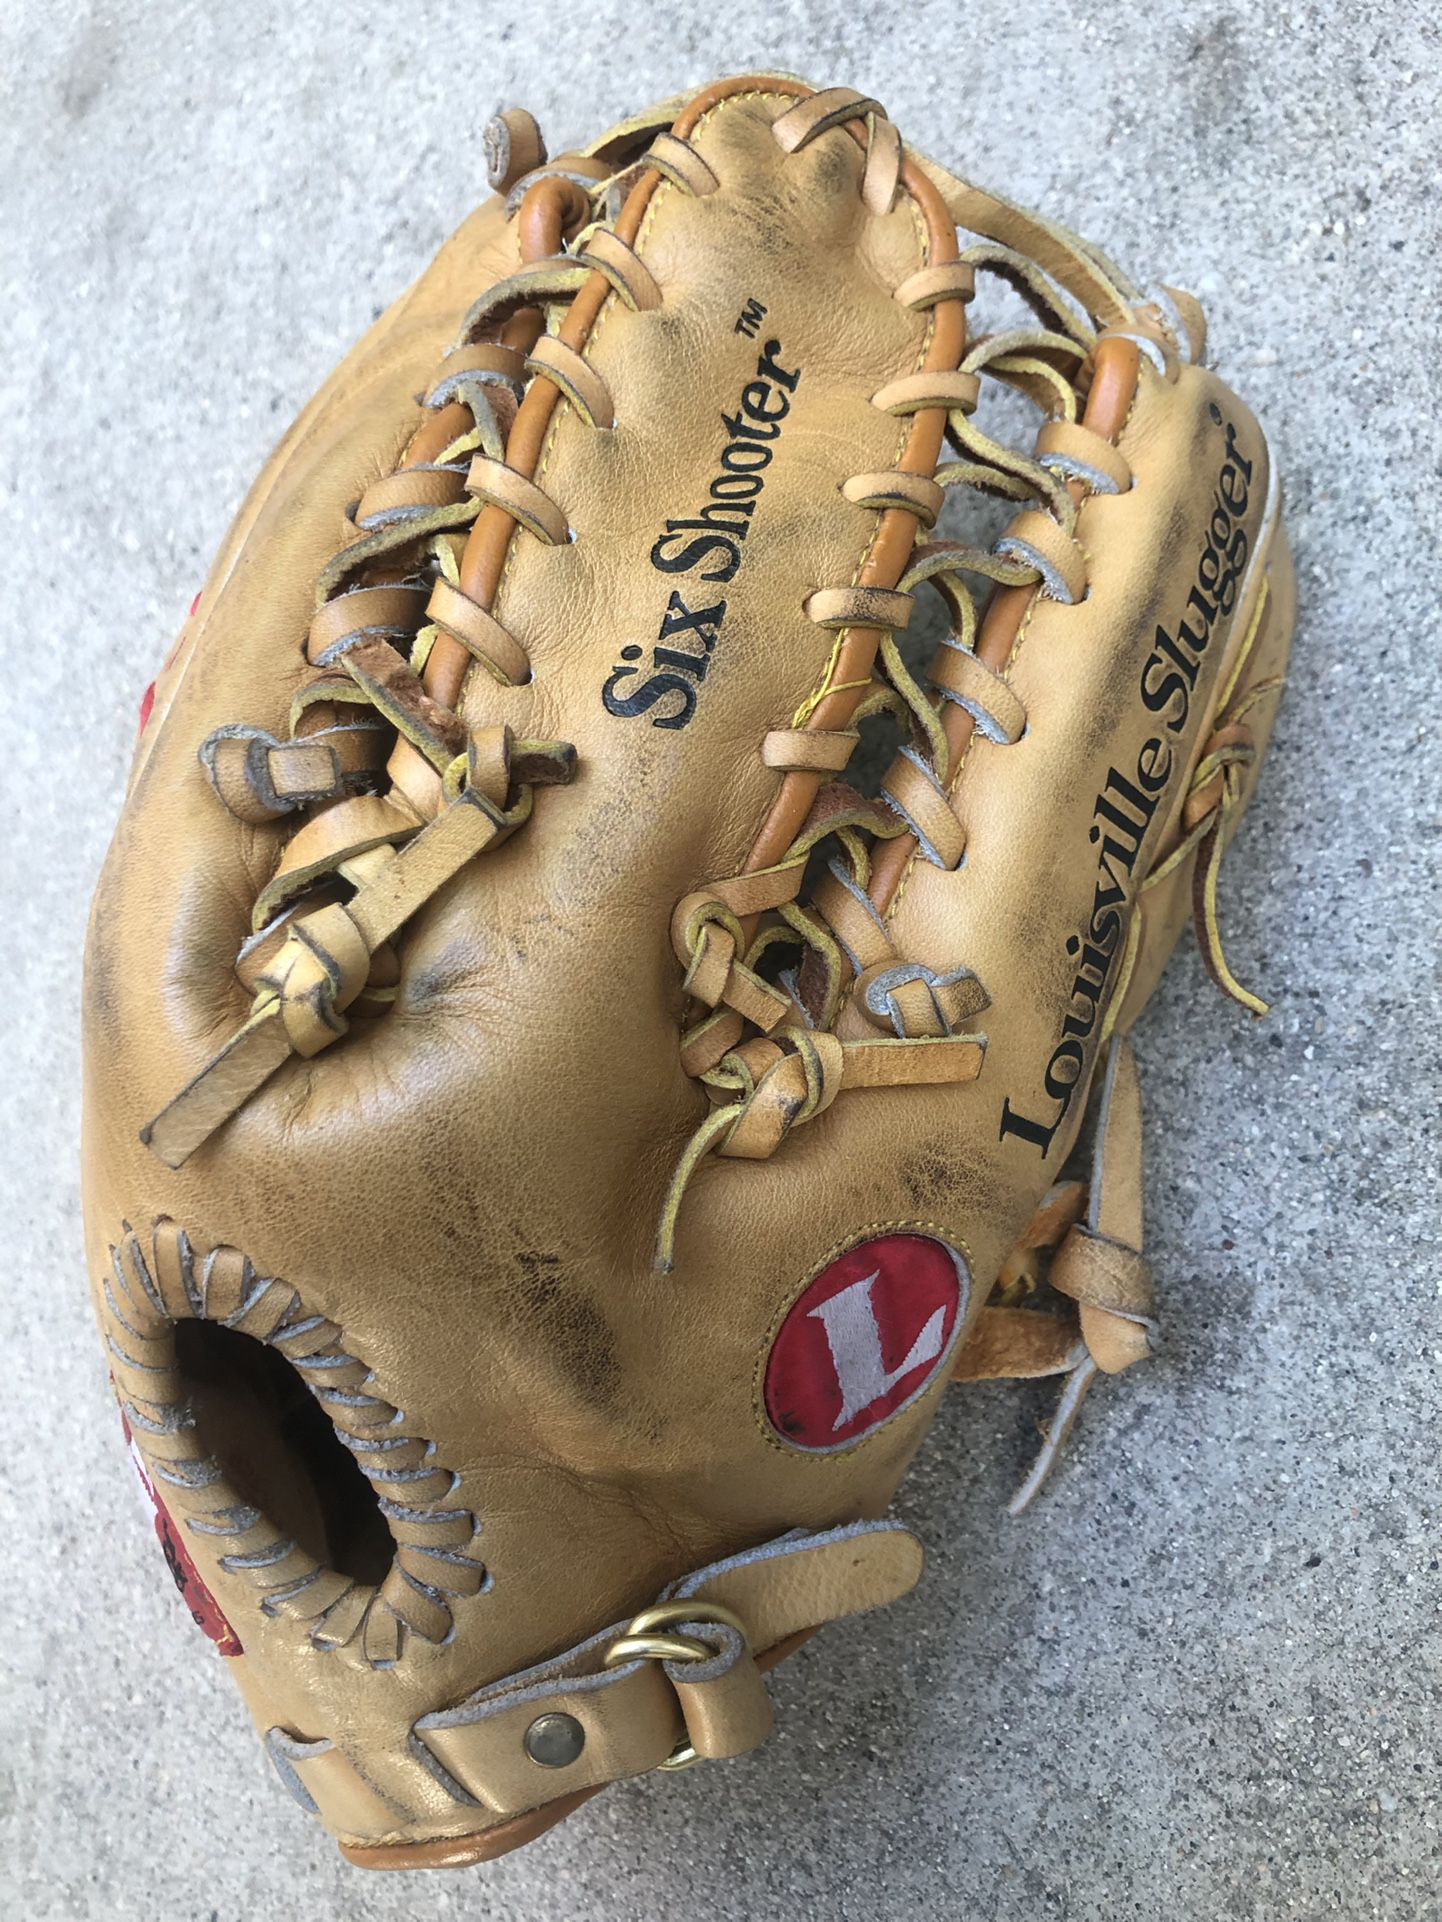 TPX Six Shooter Louisville’s Slugger Baseball Glove Rare!!Have Equipment Bats 